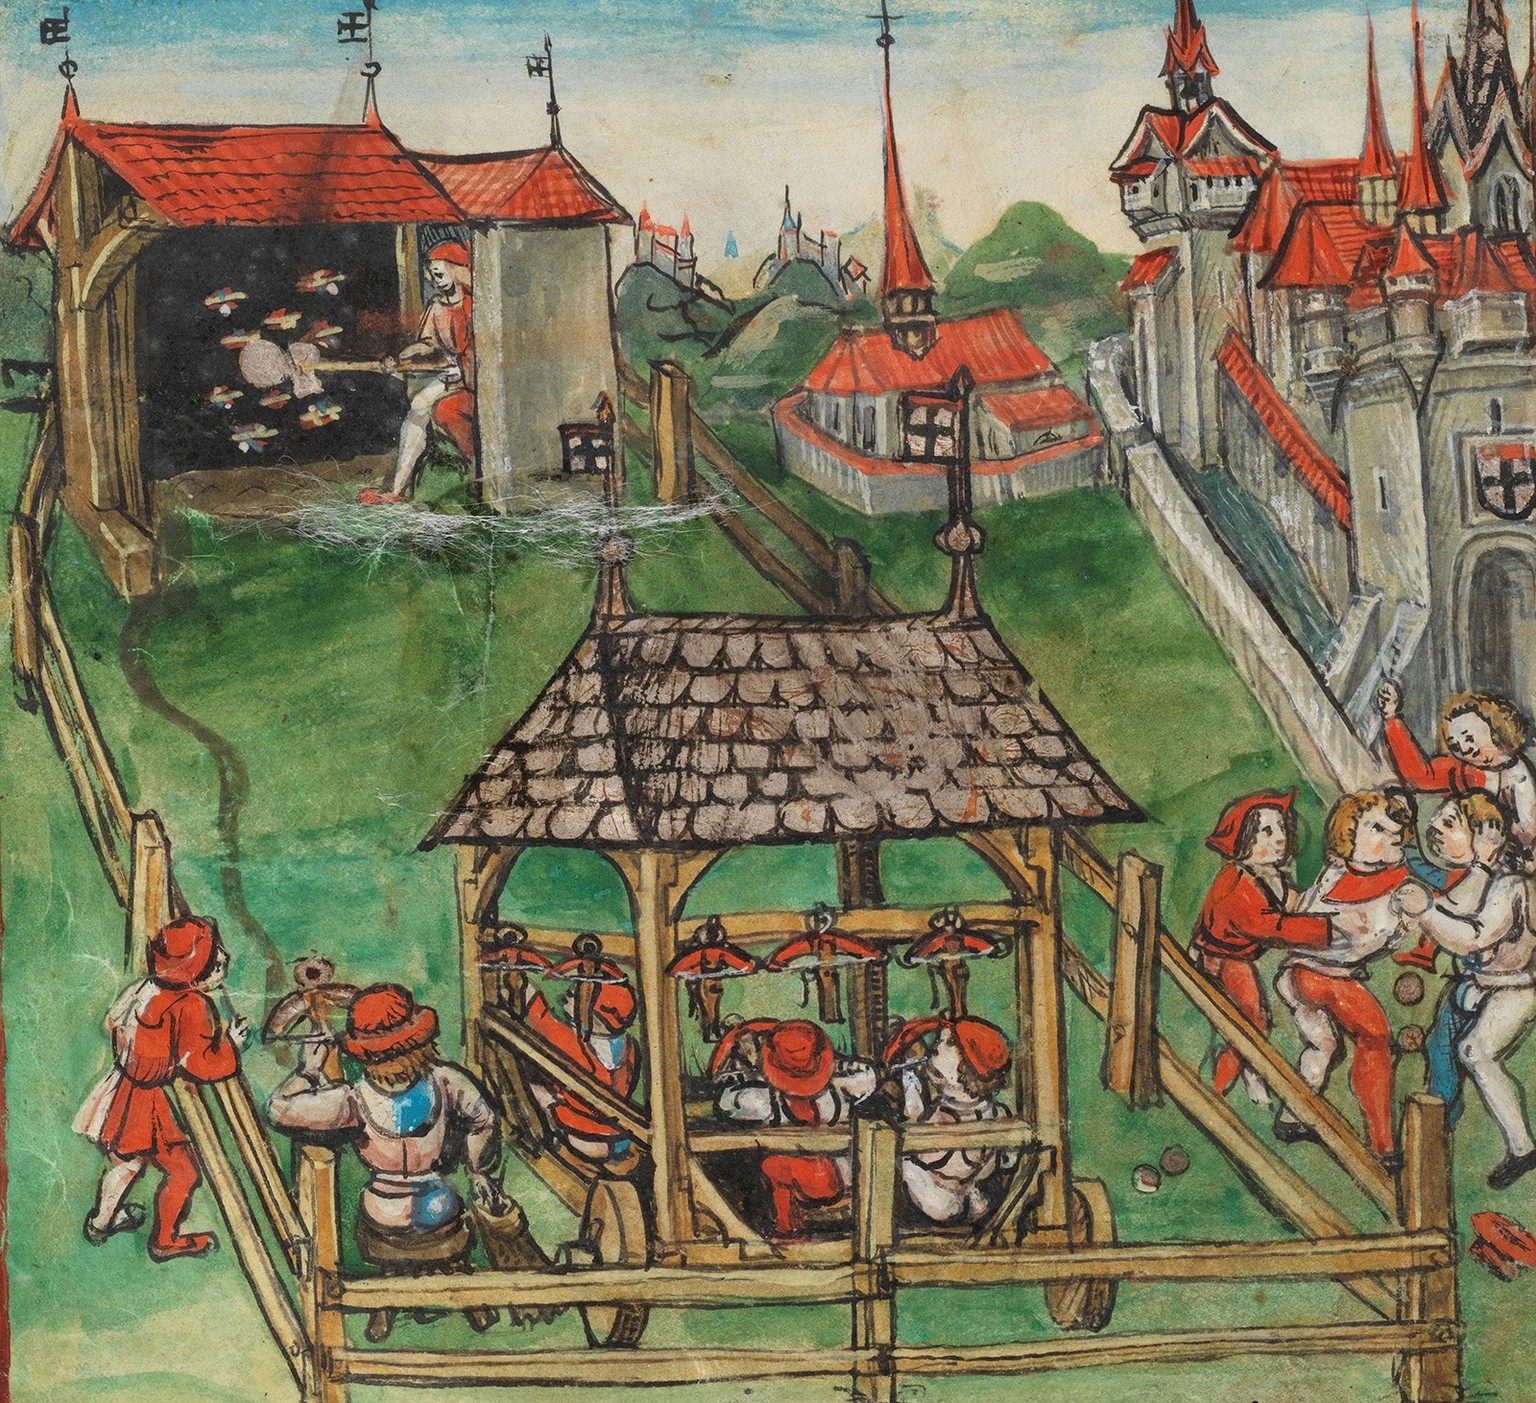 Fête du tir à Constance en 1458. Illustration publiée dans la chronique du Lucernois Diebold Schilling, vers 1513.
https://www.e-codices.unifr.ch/fr/kol/S0023-2/557